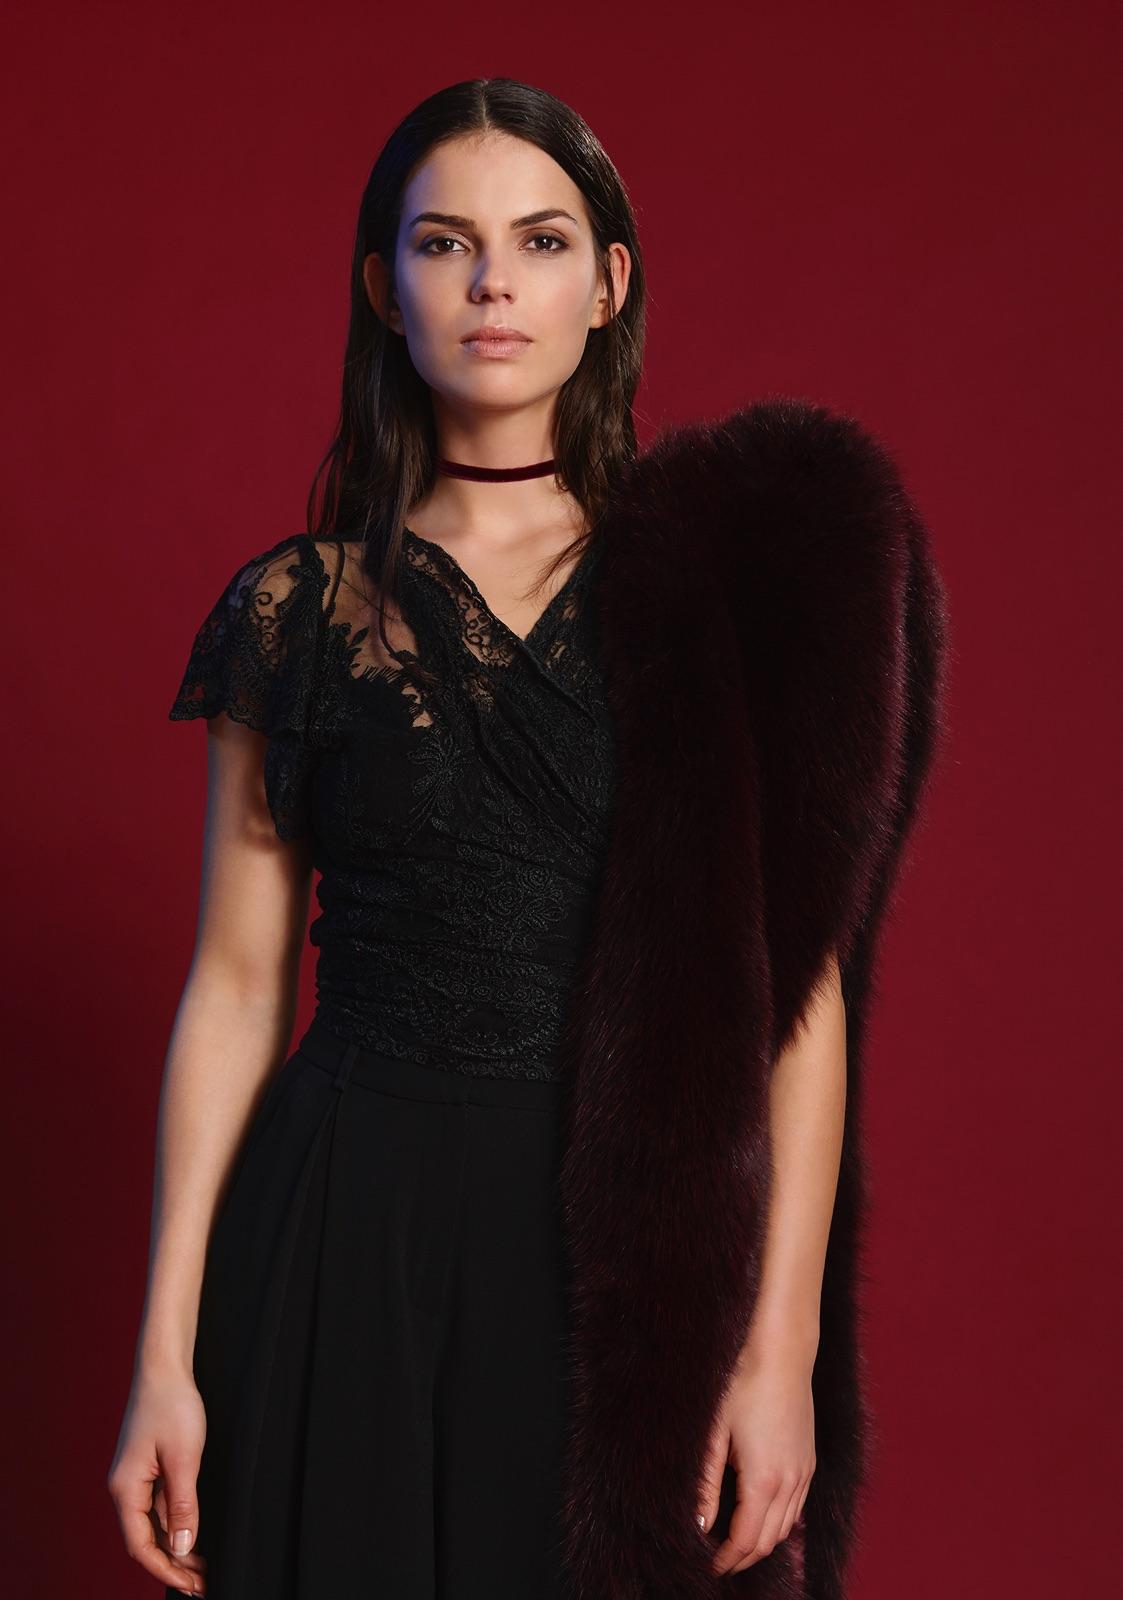 Women's or Men's Verheyen London Legacy Stole in Garnet Burgundy Fox Fur with Belt  For Sale